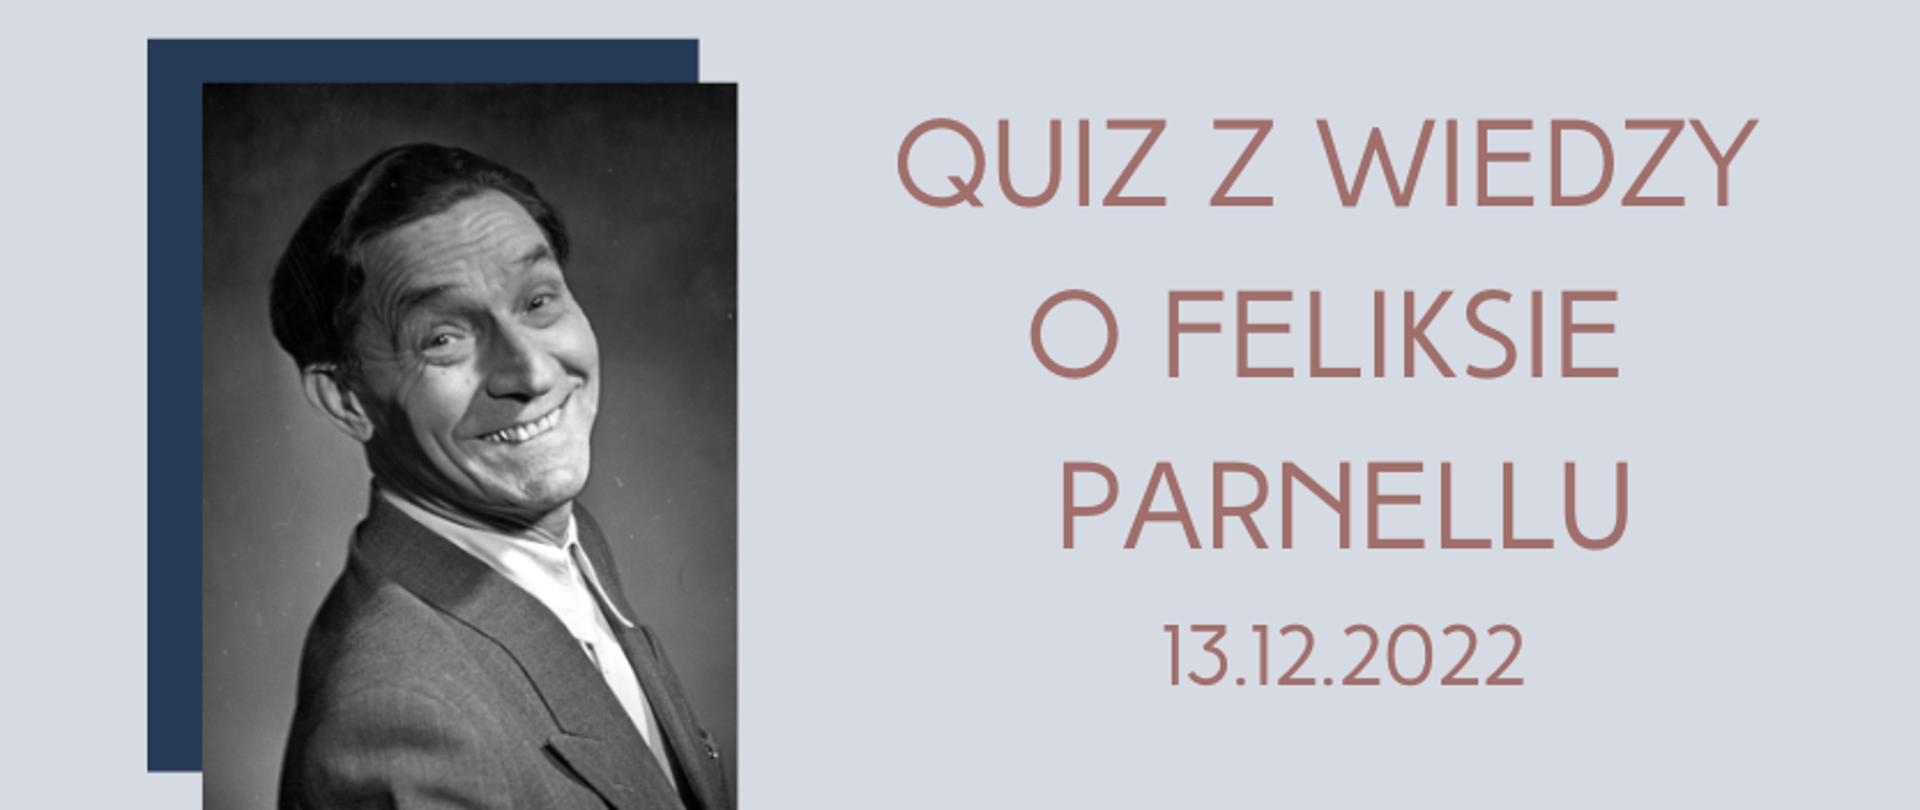 grafika: zdjęcie portretowe uśmiechniętego Feliksa Parnella po lewej stronie, po prawej napis Quiz z wiedzy o Feliksie Parnellu 13.12.2022